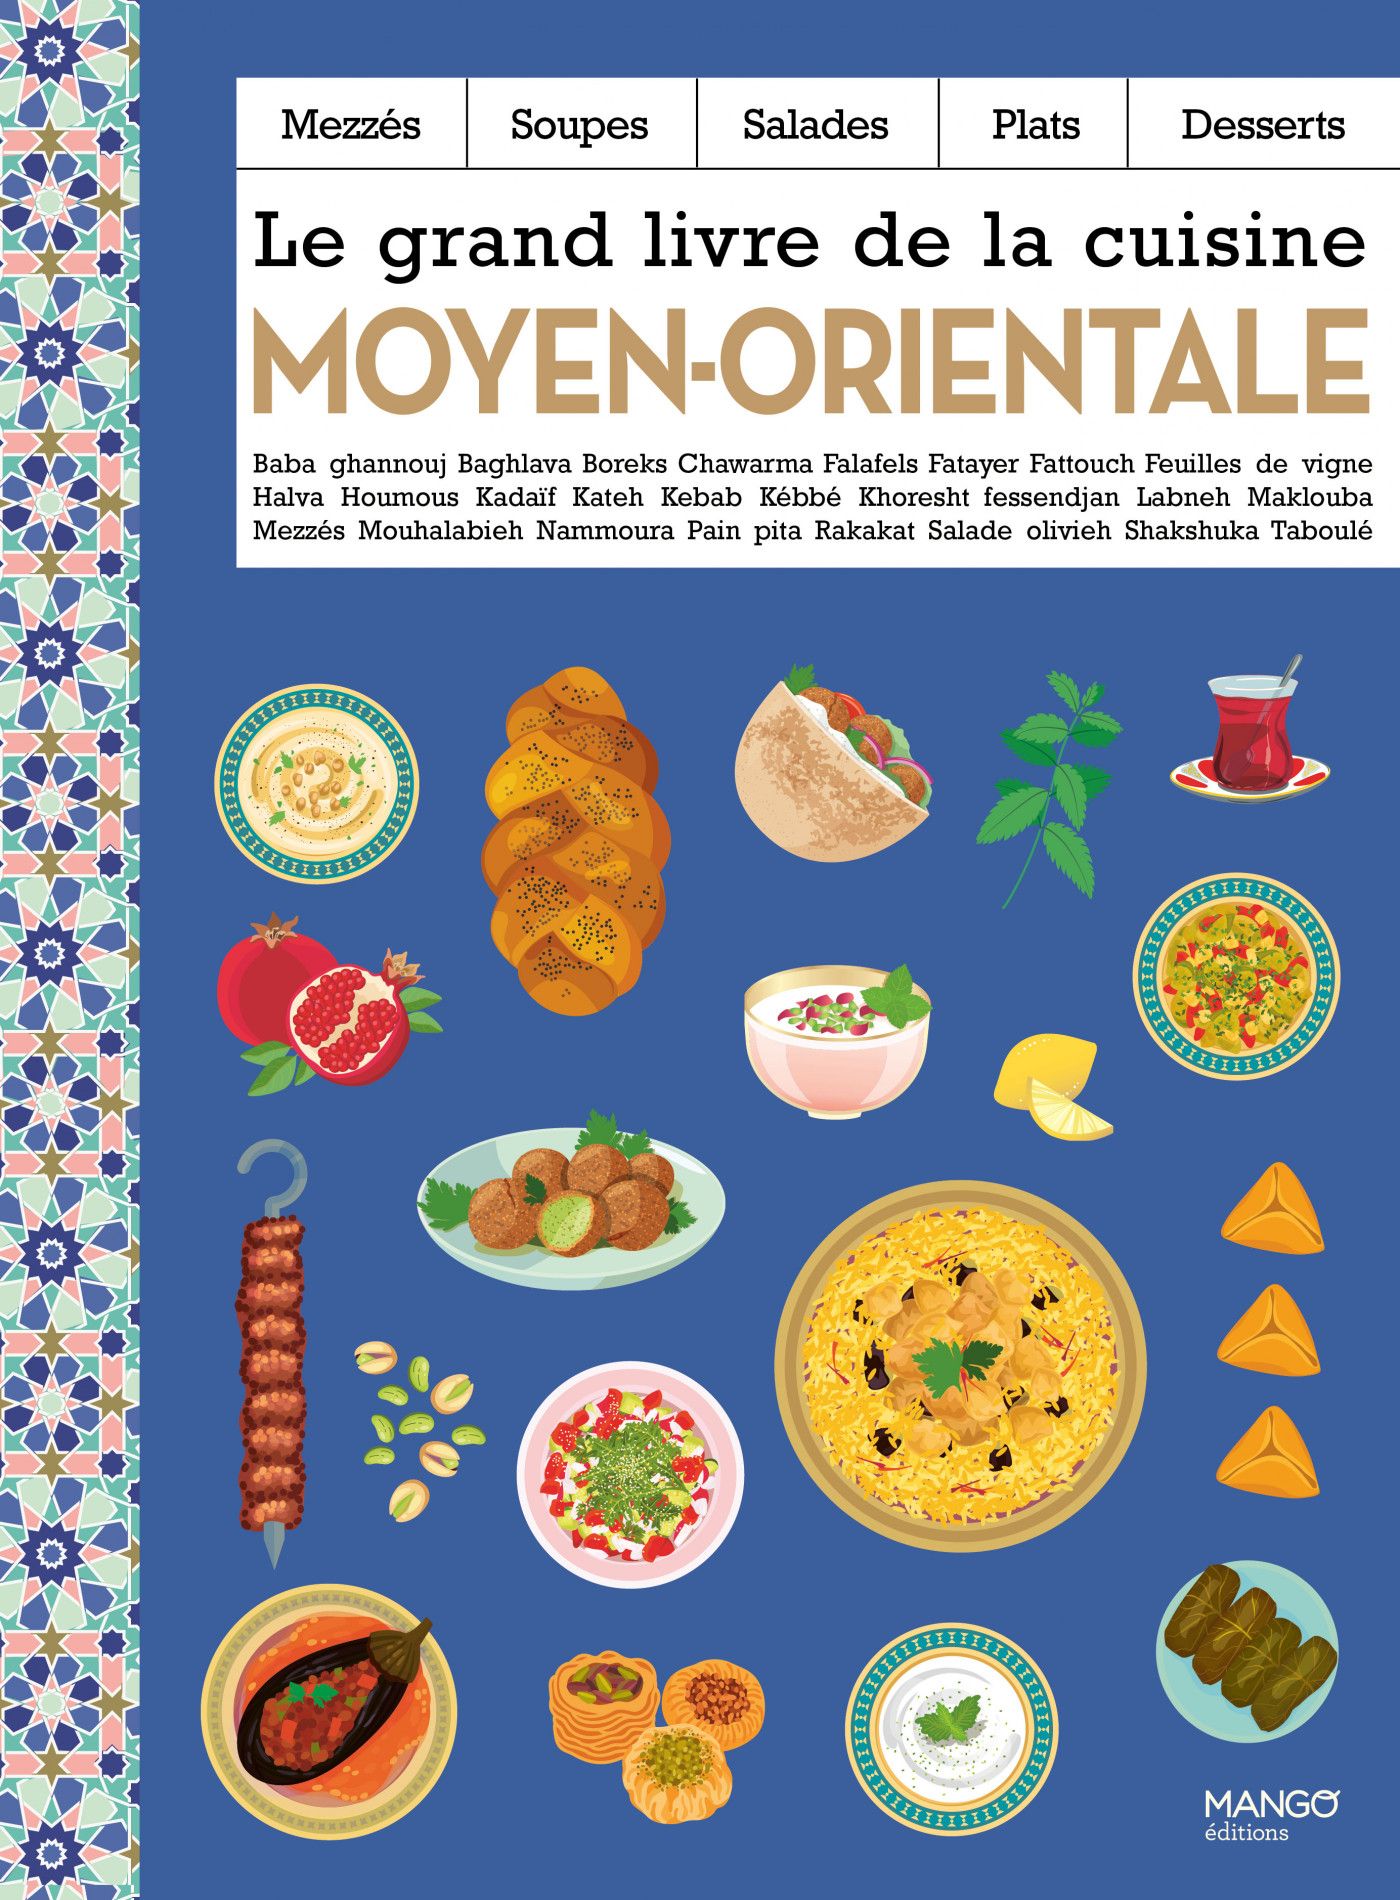 Le Grand livre de la cuisine moyen-orientale » : Boreks, Falafels